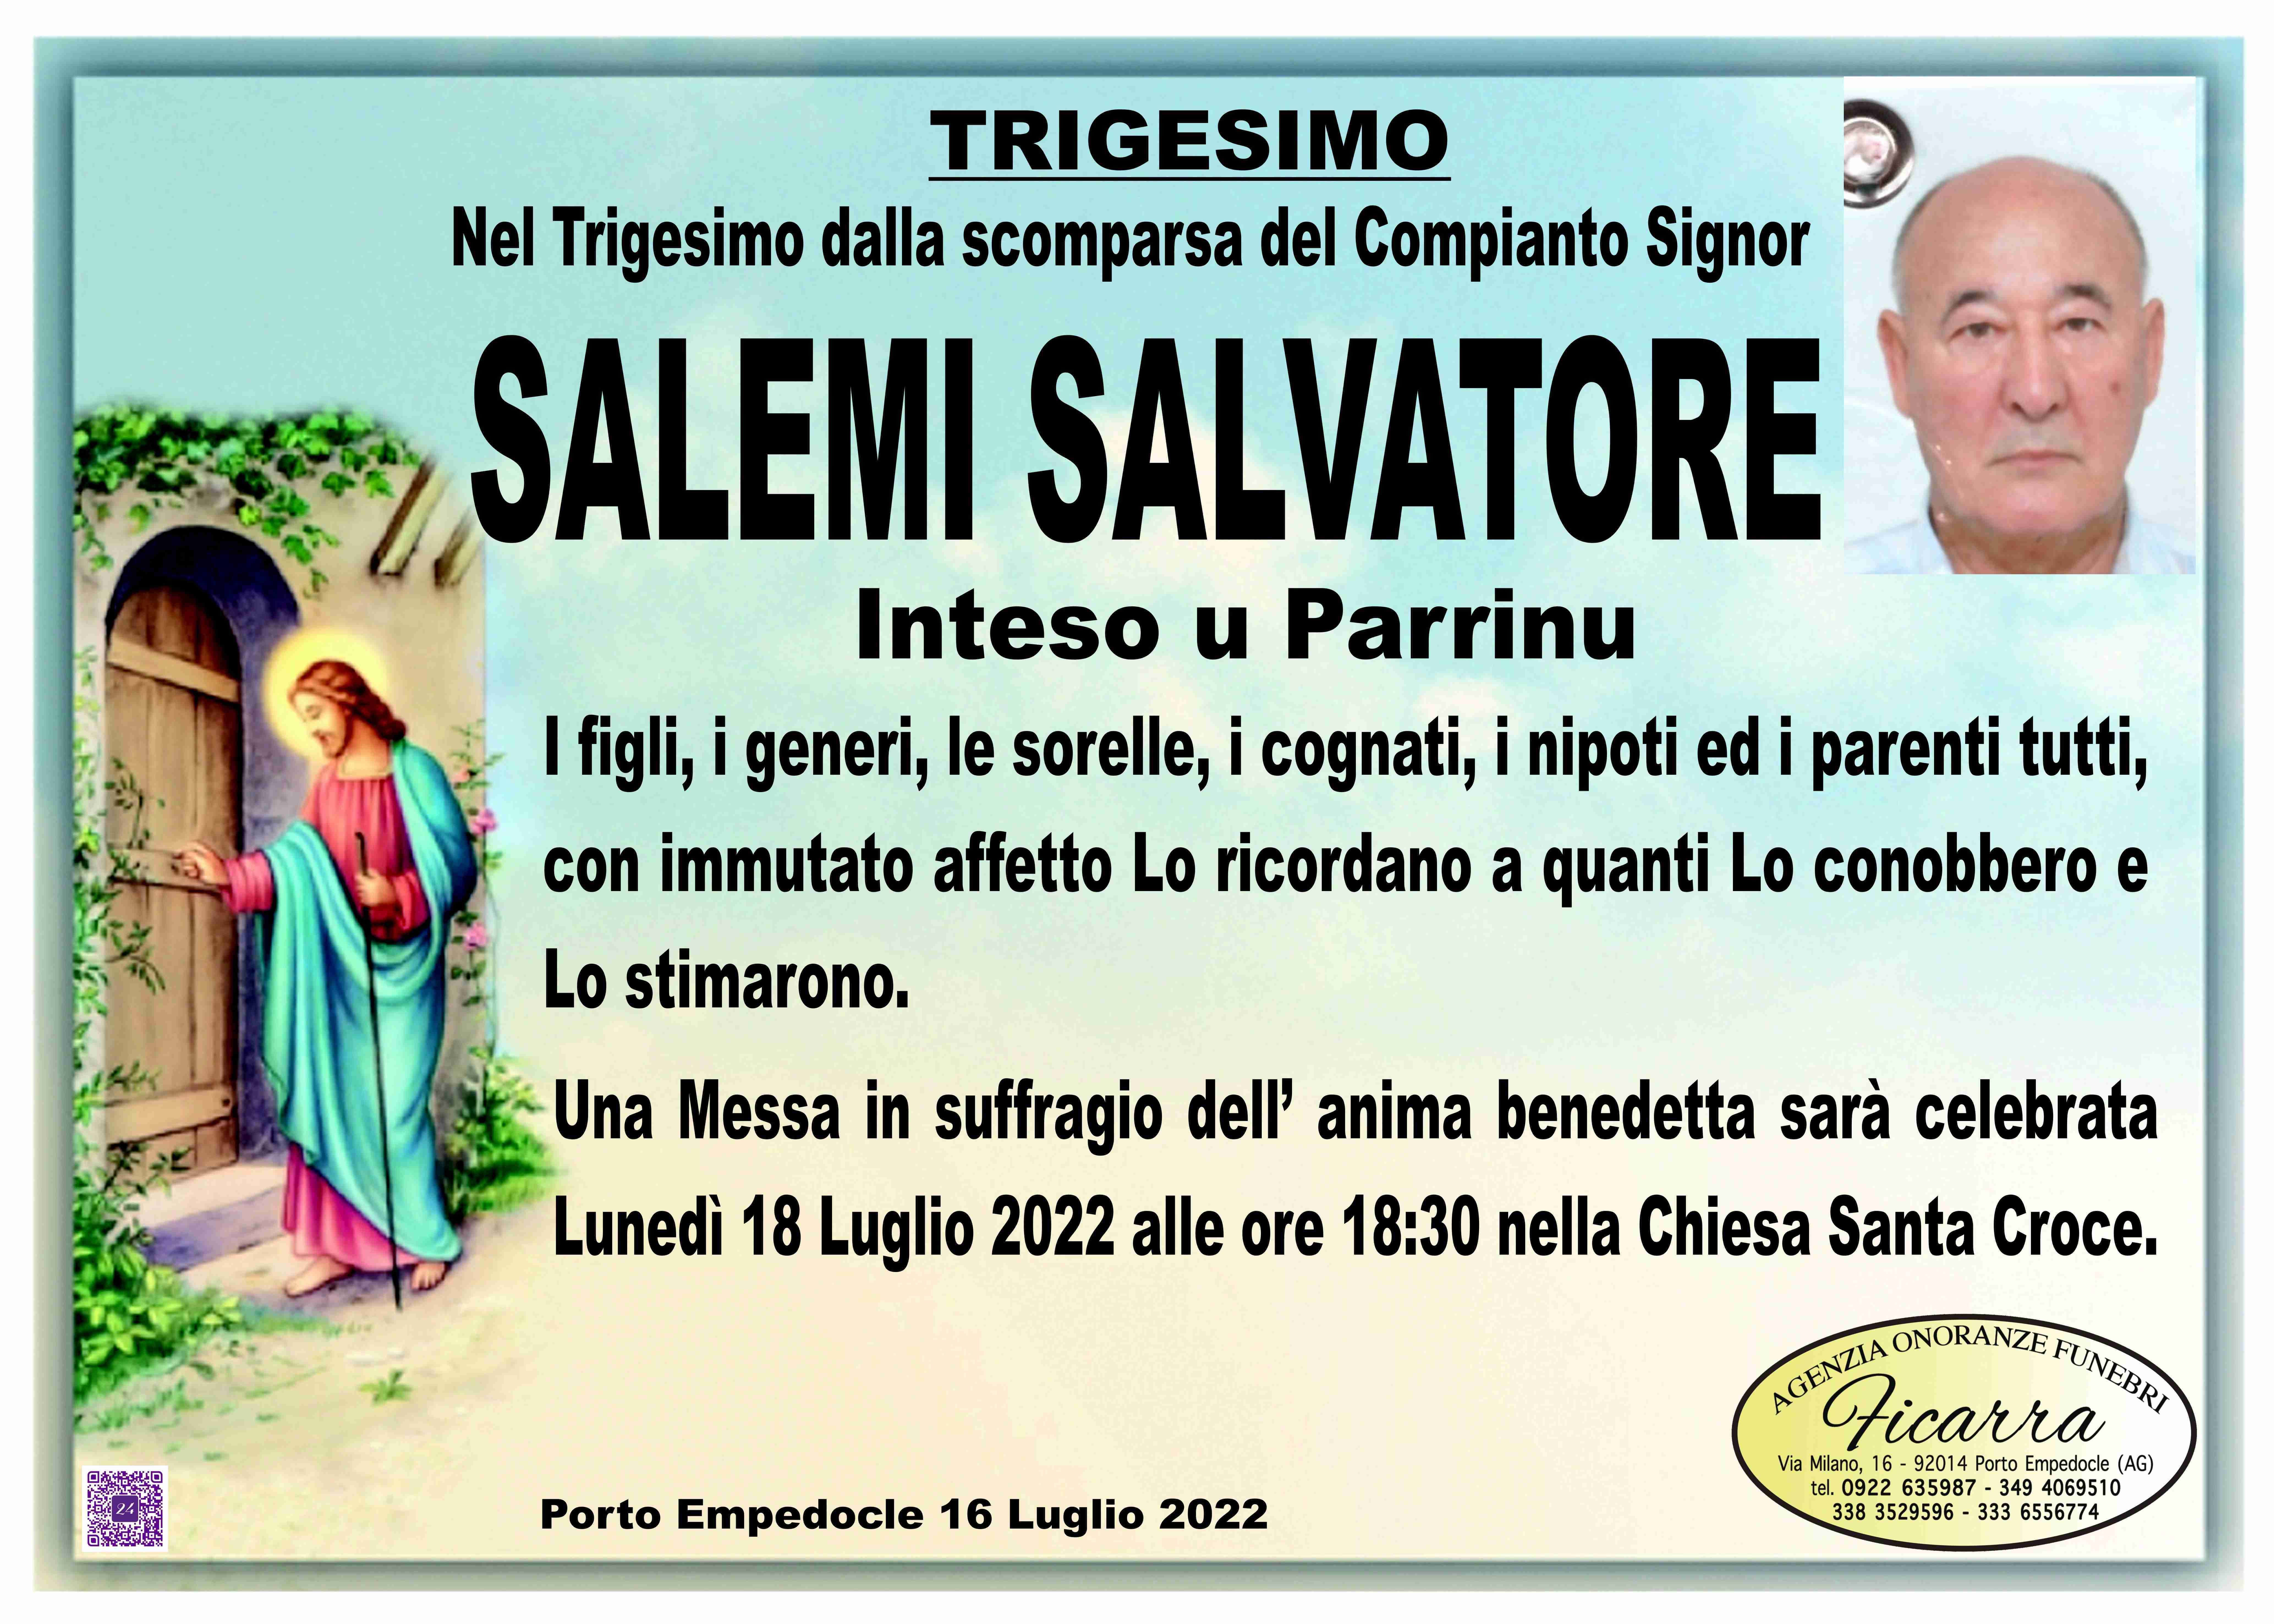 Salvatore Salemi